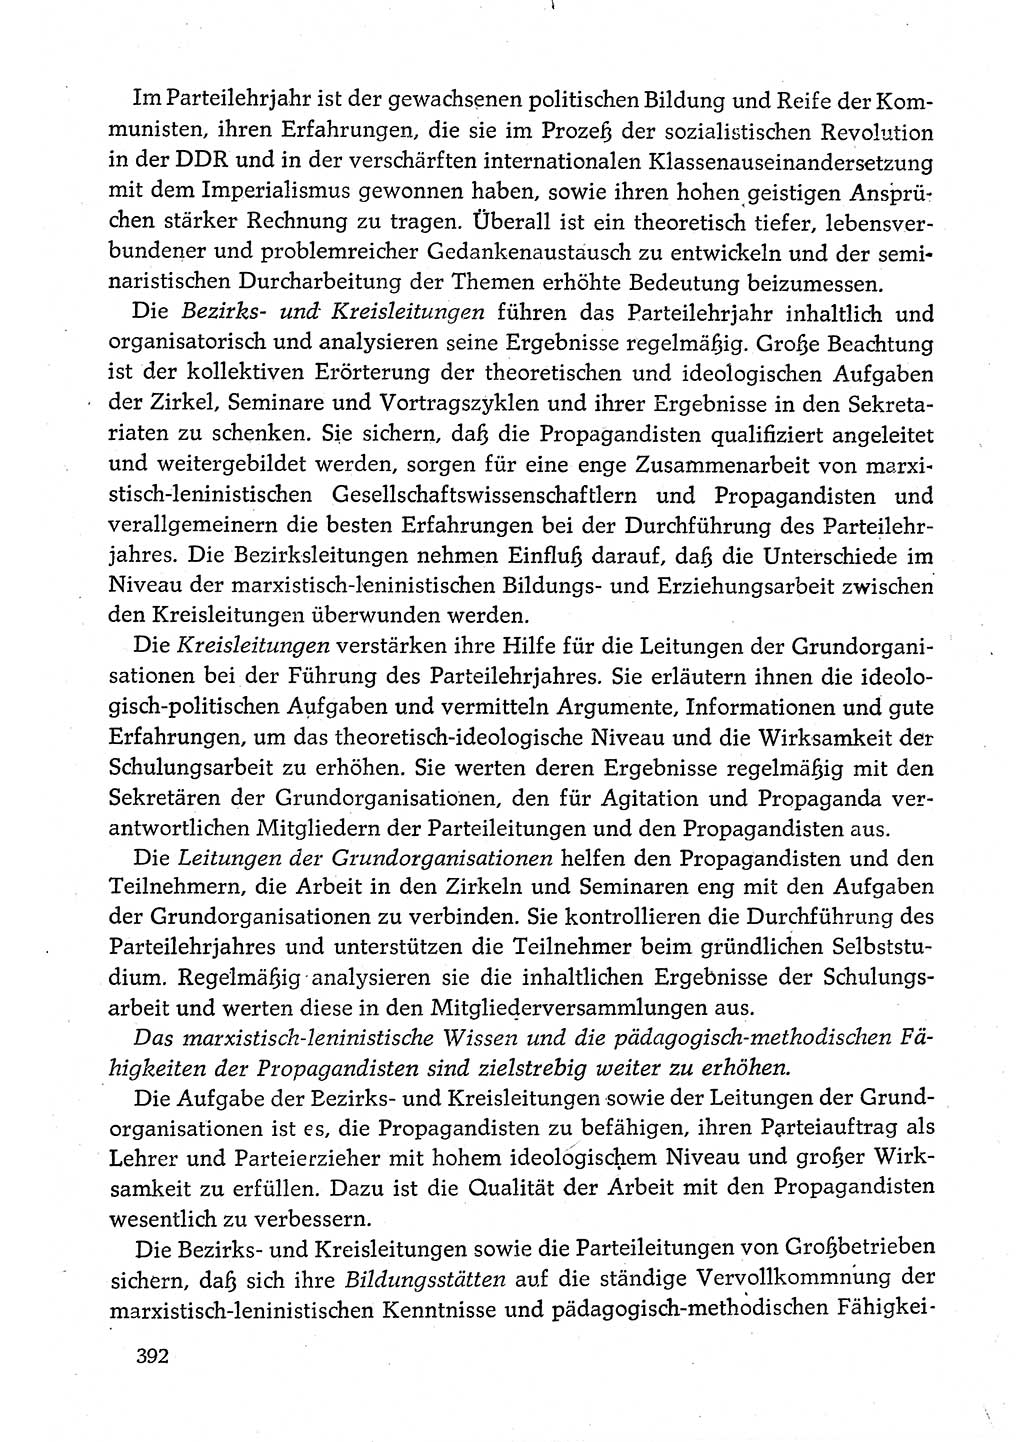 Dokumente der Sozialistischen Einheitspartei Deutschlands (SED) [Deutsche Demokratische Republik (DDR)] 1980-1981, Seite 392 (Dok. SED DDR 1980-1981, S. 392)